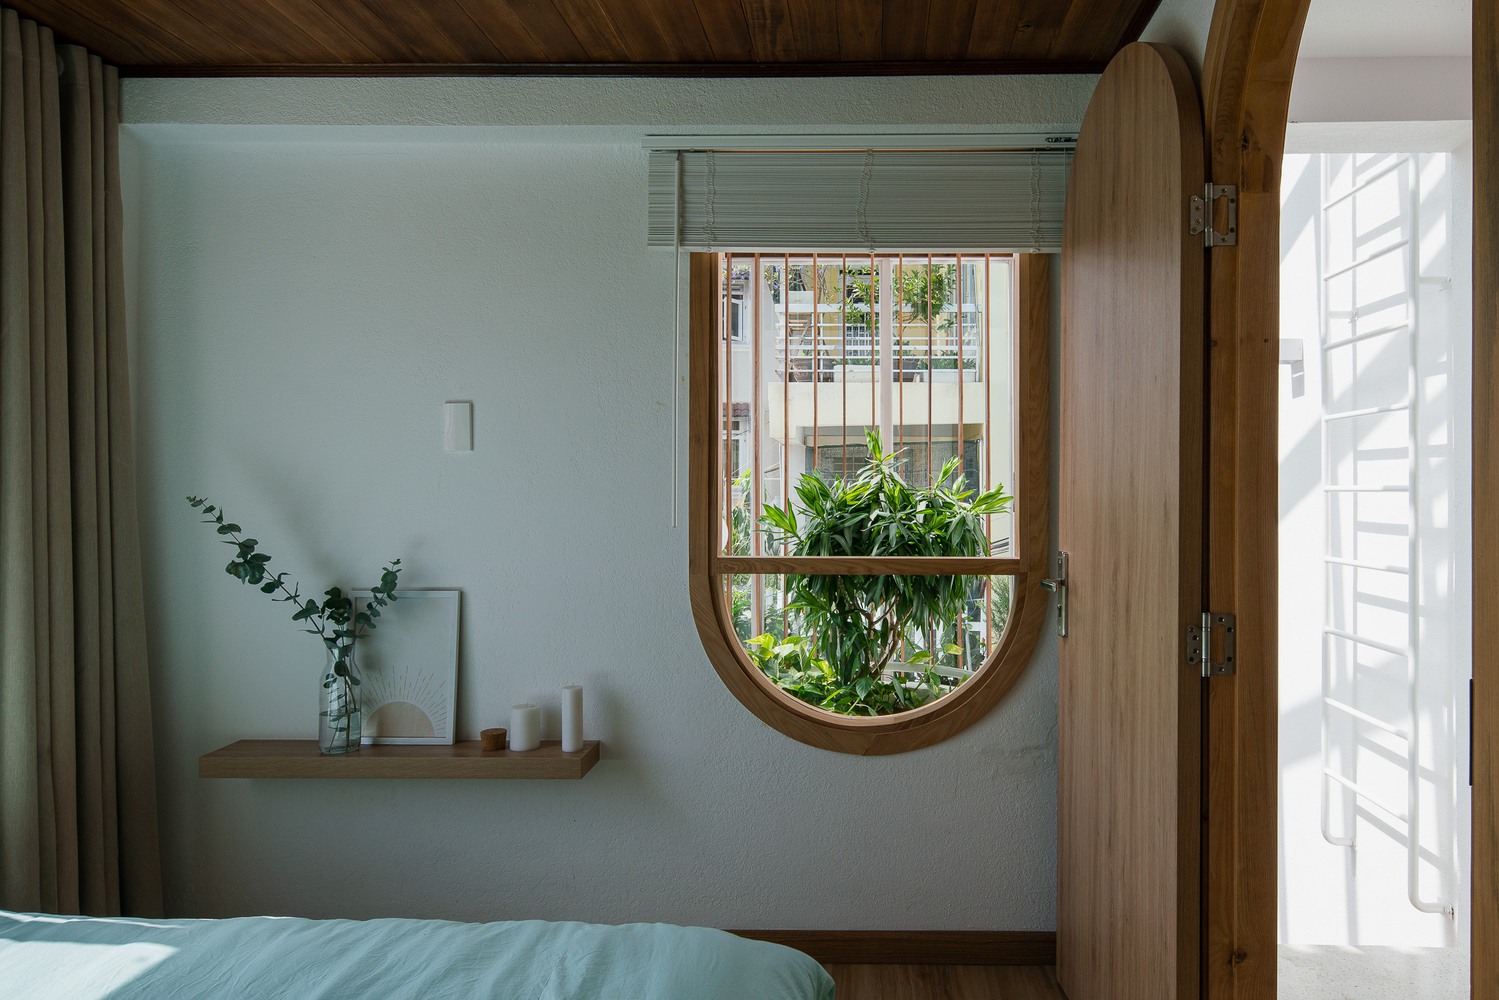 Hình ảnh một góc phòng ngủ với kệ mở gắn tường đặt bình cây, cửa sổ vòm mở ra khoảng xanh bên ngoài